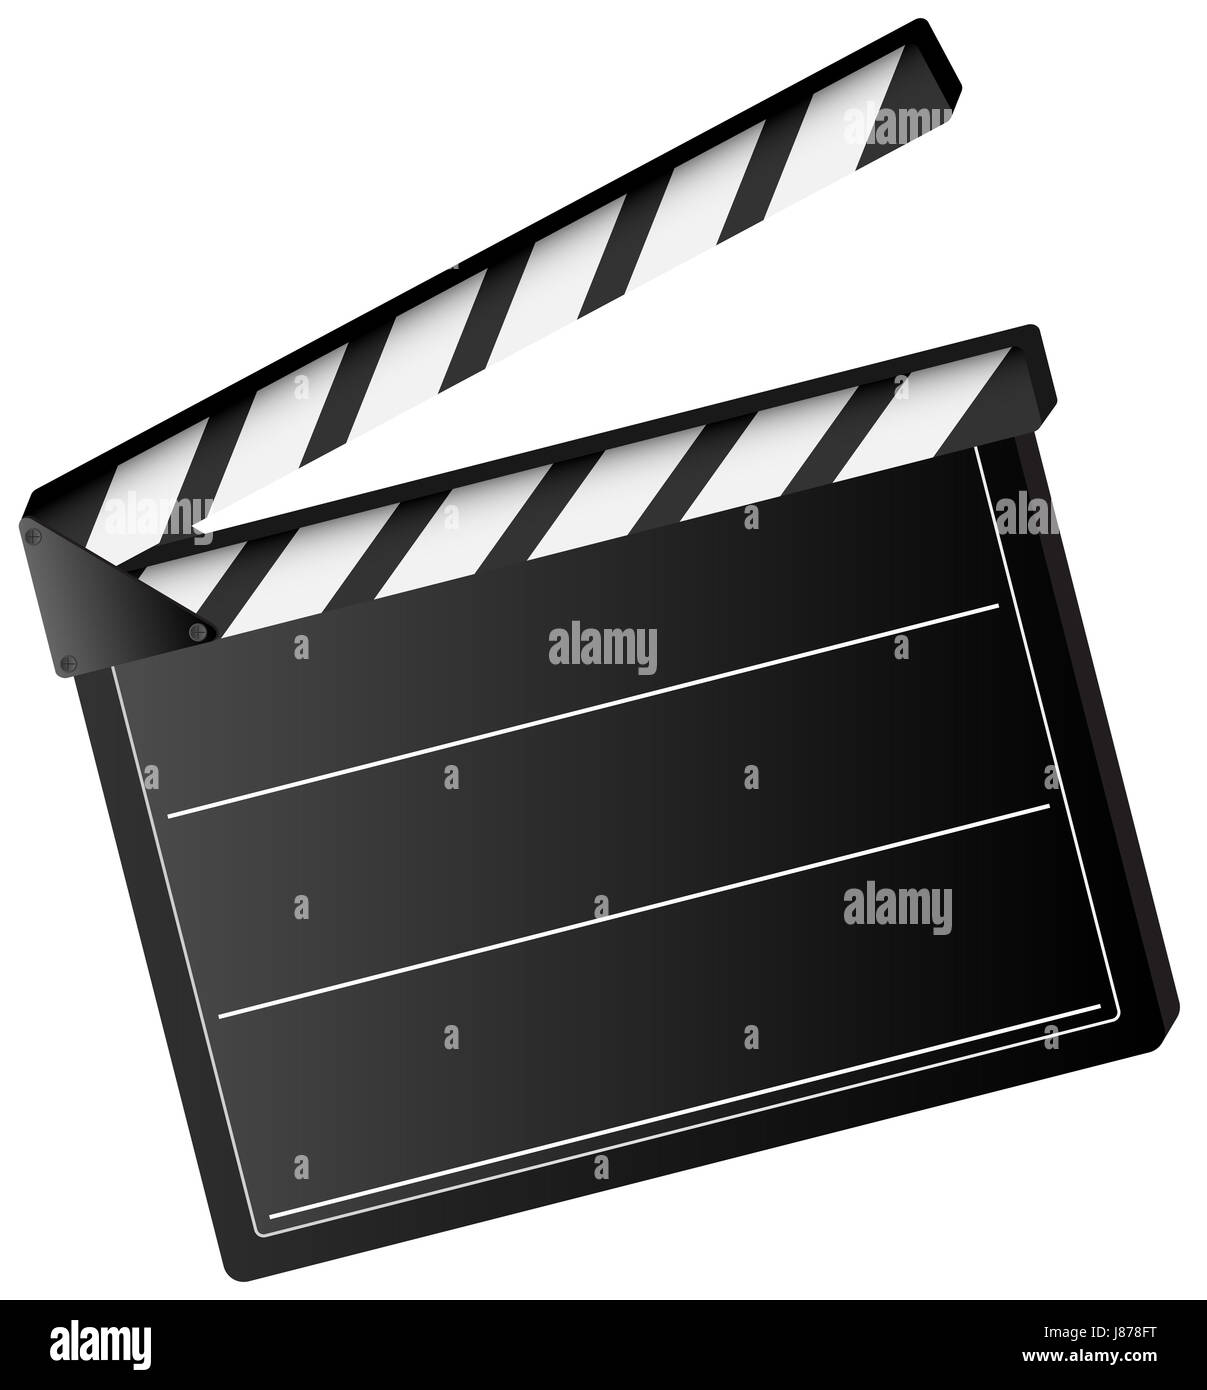 Claqueta cine - Iconos Cine, Televisión y Peliculas